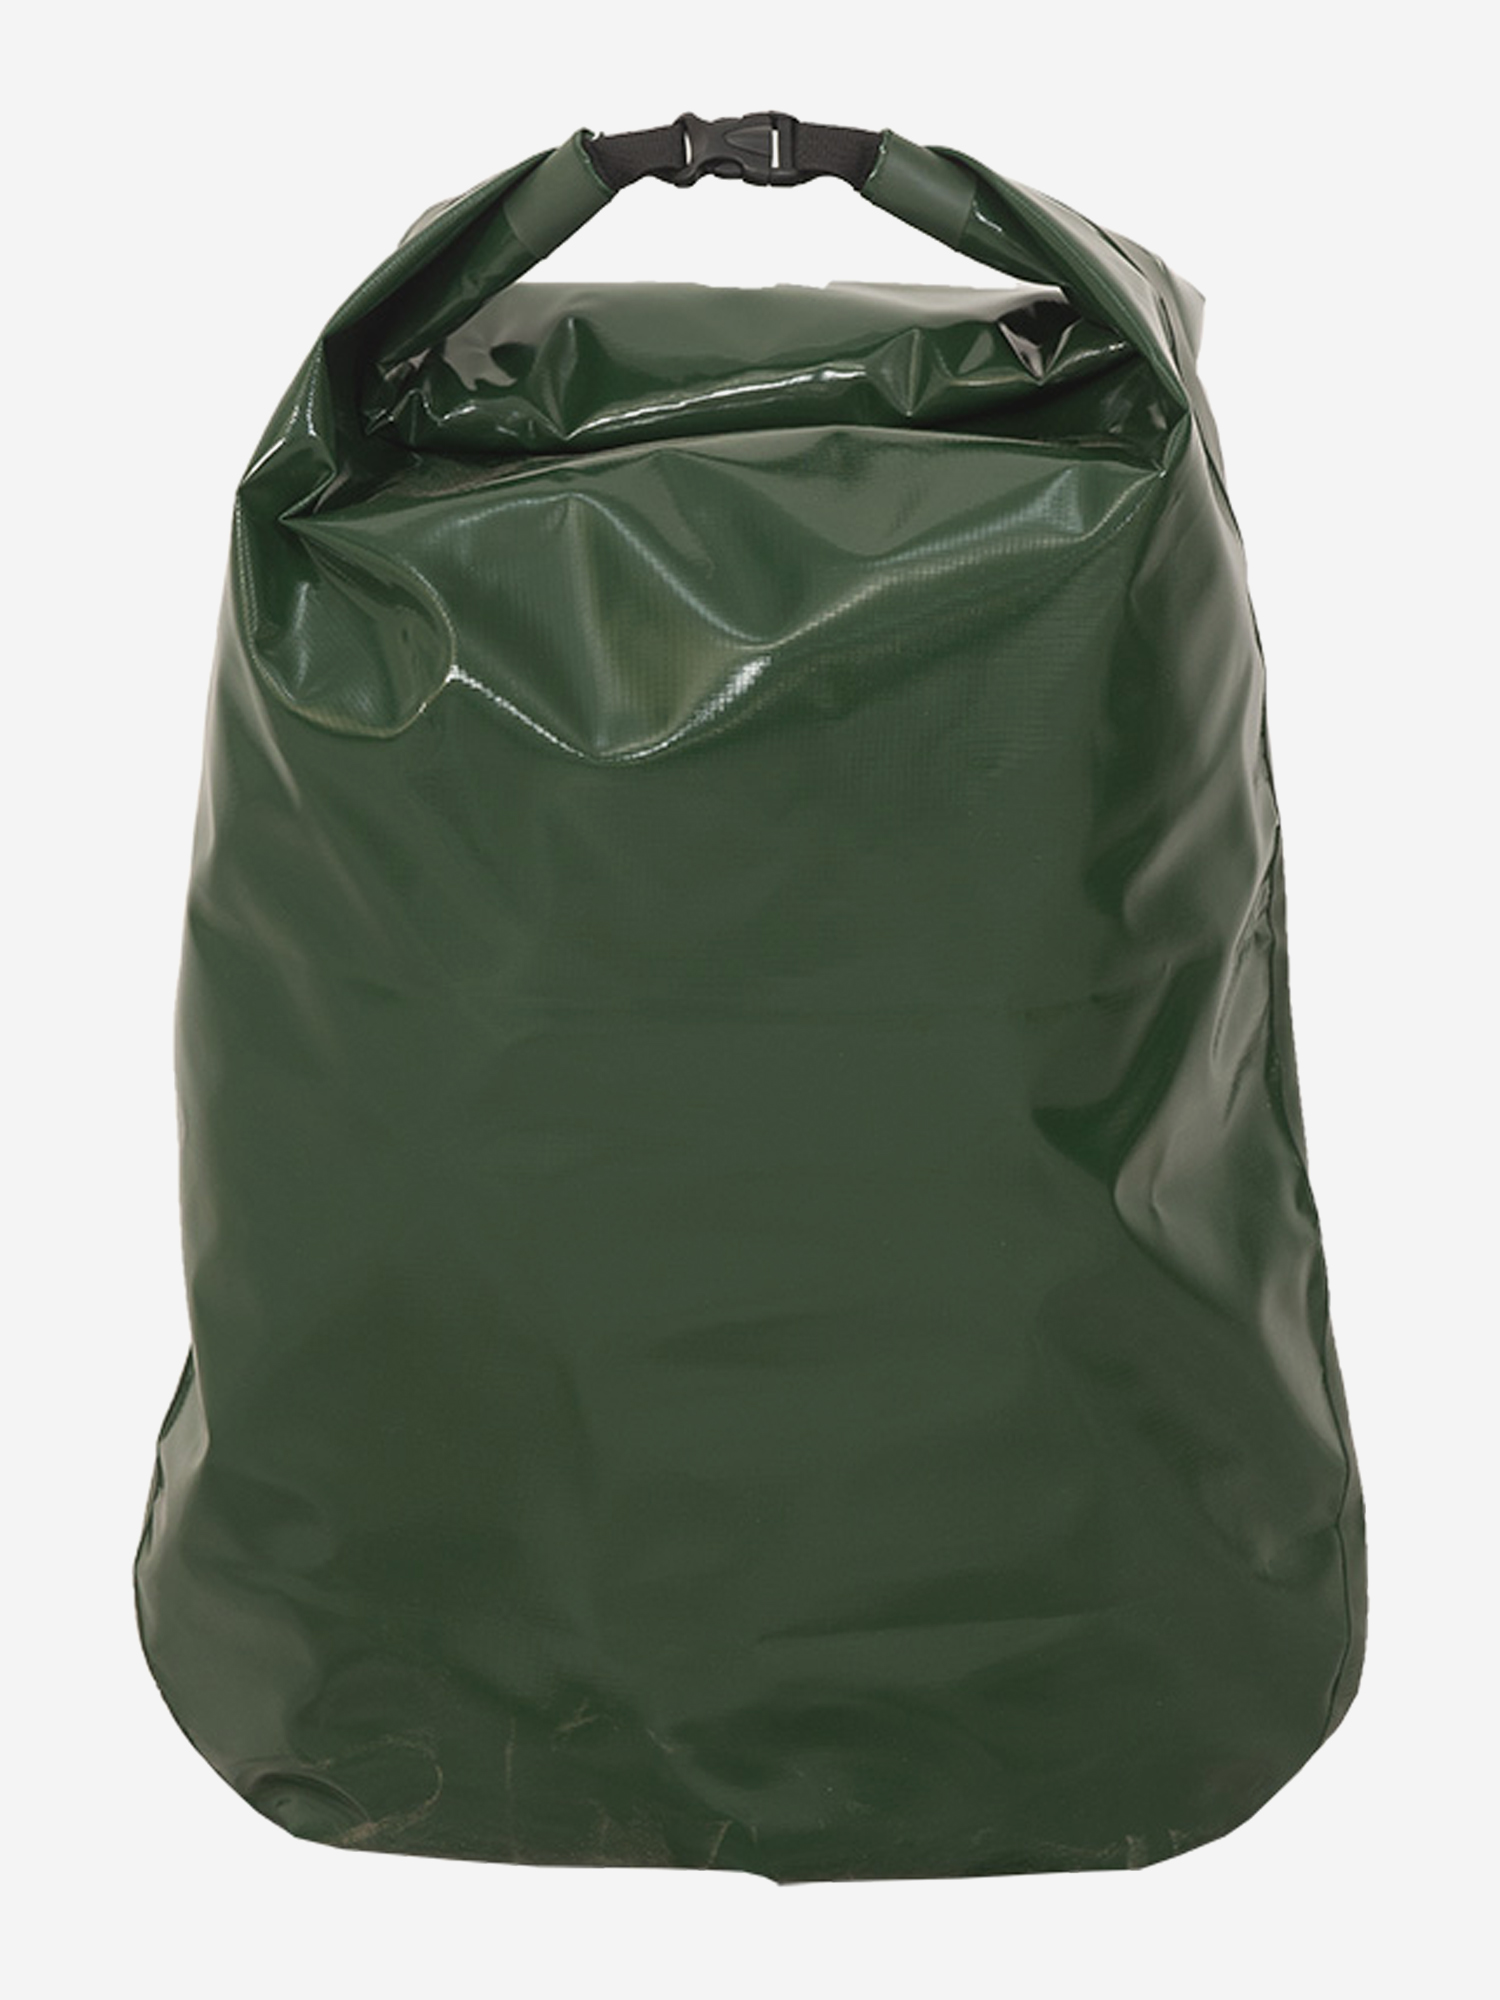 Гермомешок Ковчег 60, Зеленый сумка гермомешок greenhouse 5л зеленая зеленый